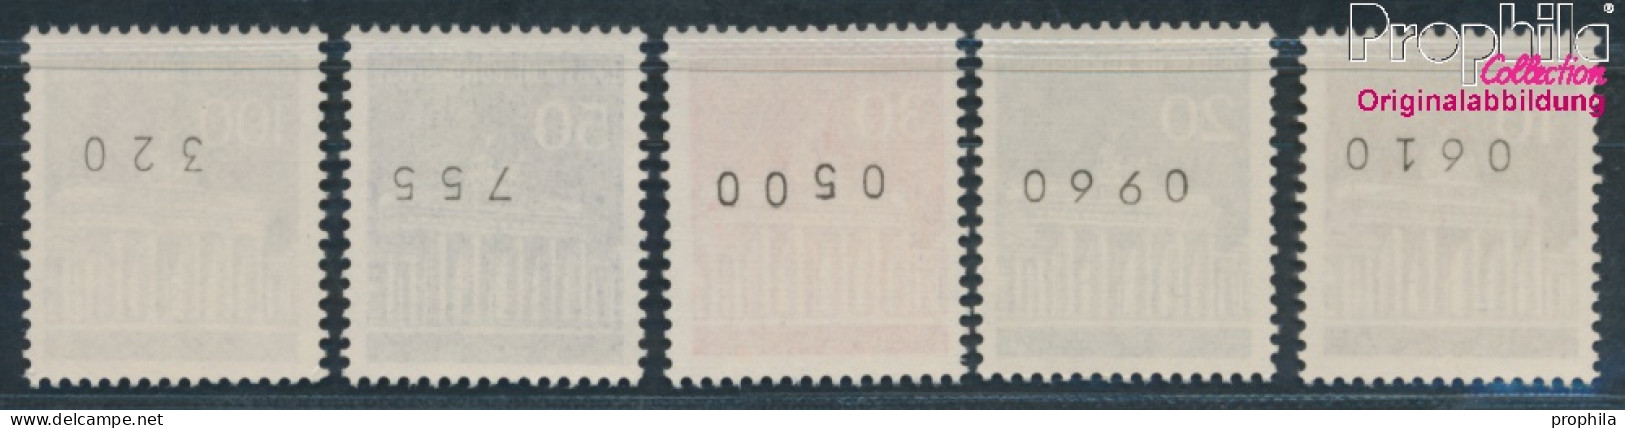 BRD 506w R-510w R Mit Zählnummer (kpl.) Matte Gummierung Postfrisch 1966 Brandenburger Tor (10348149 - Ungebraucht